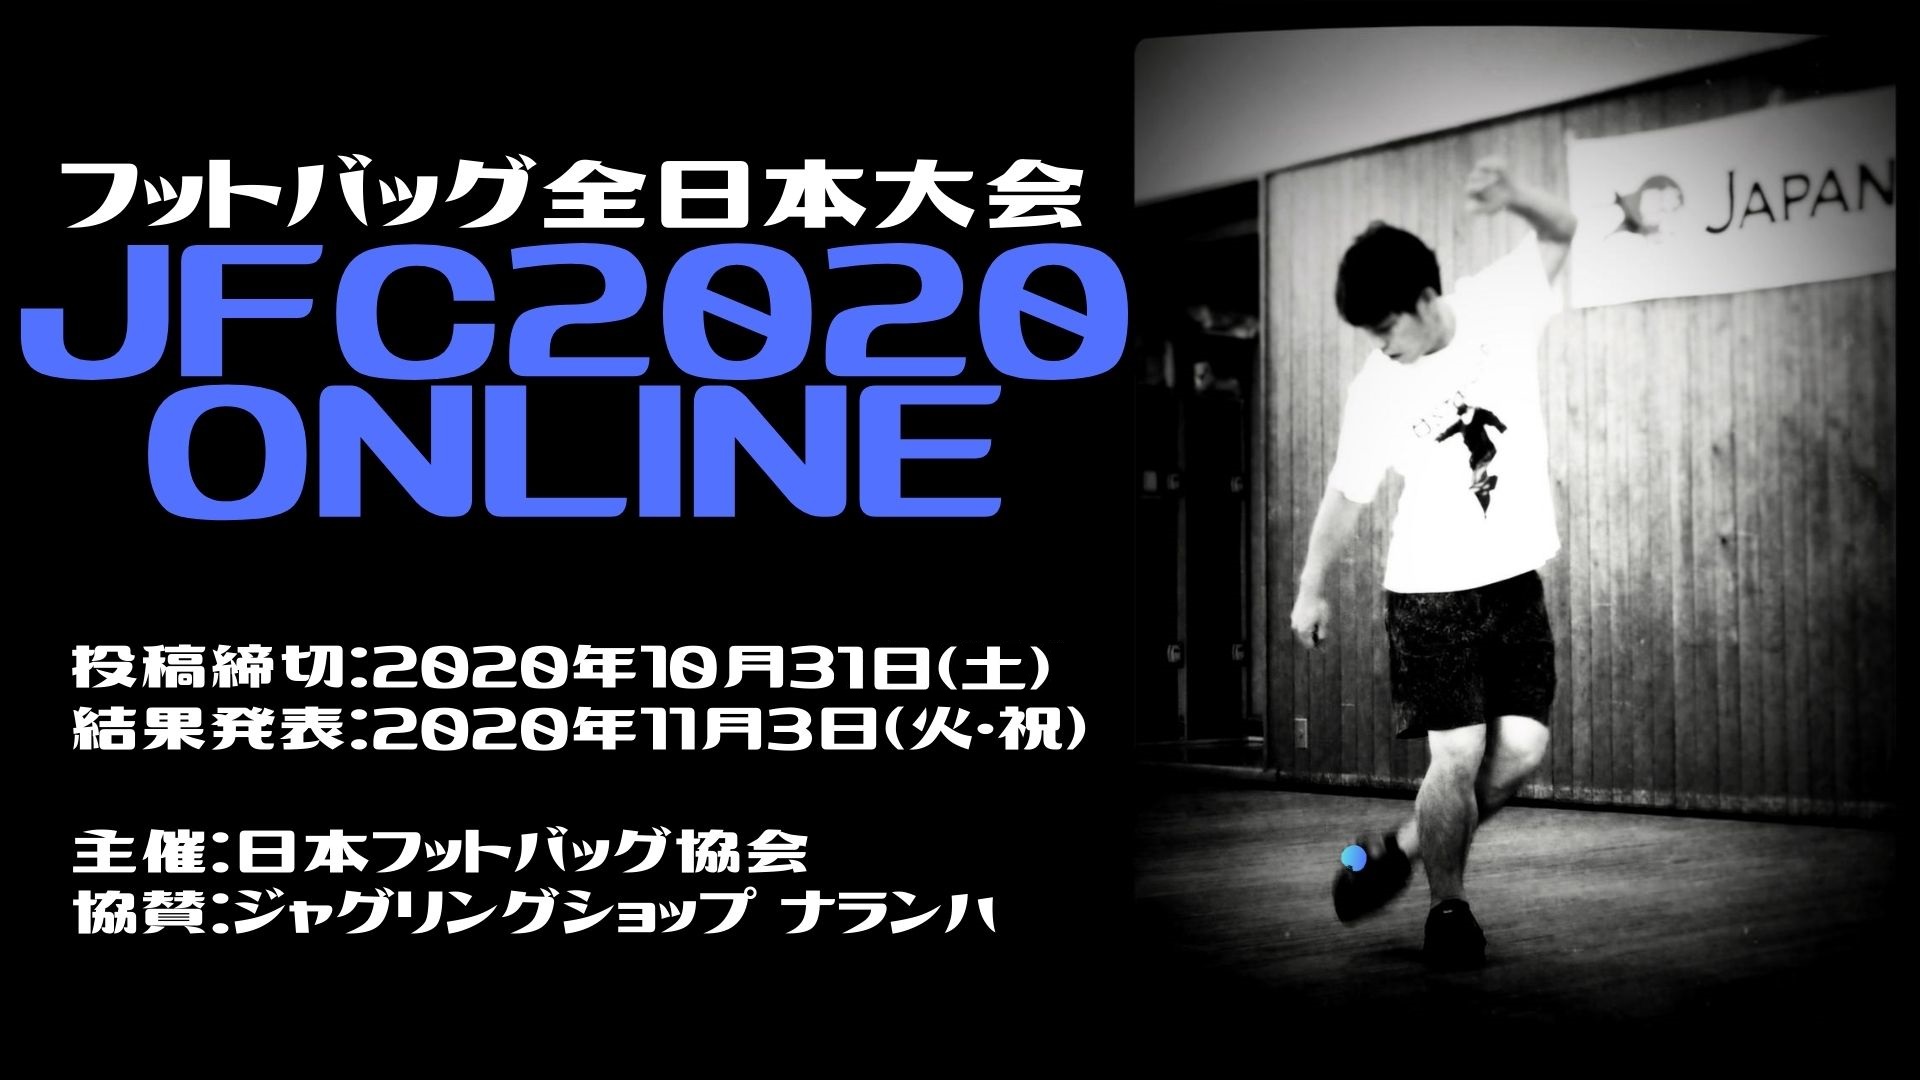 Japan Footbag Championships 2020 online